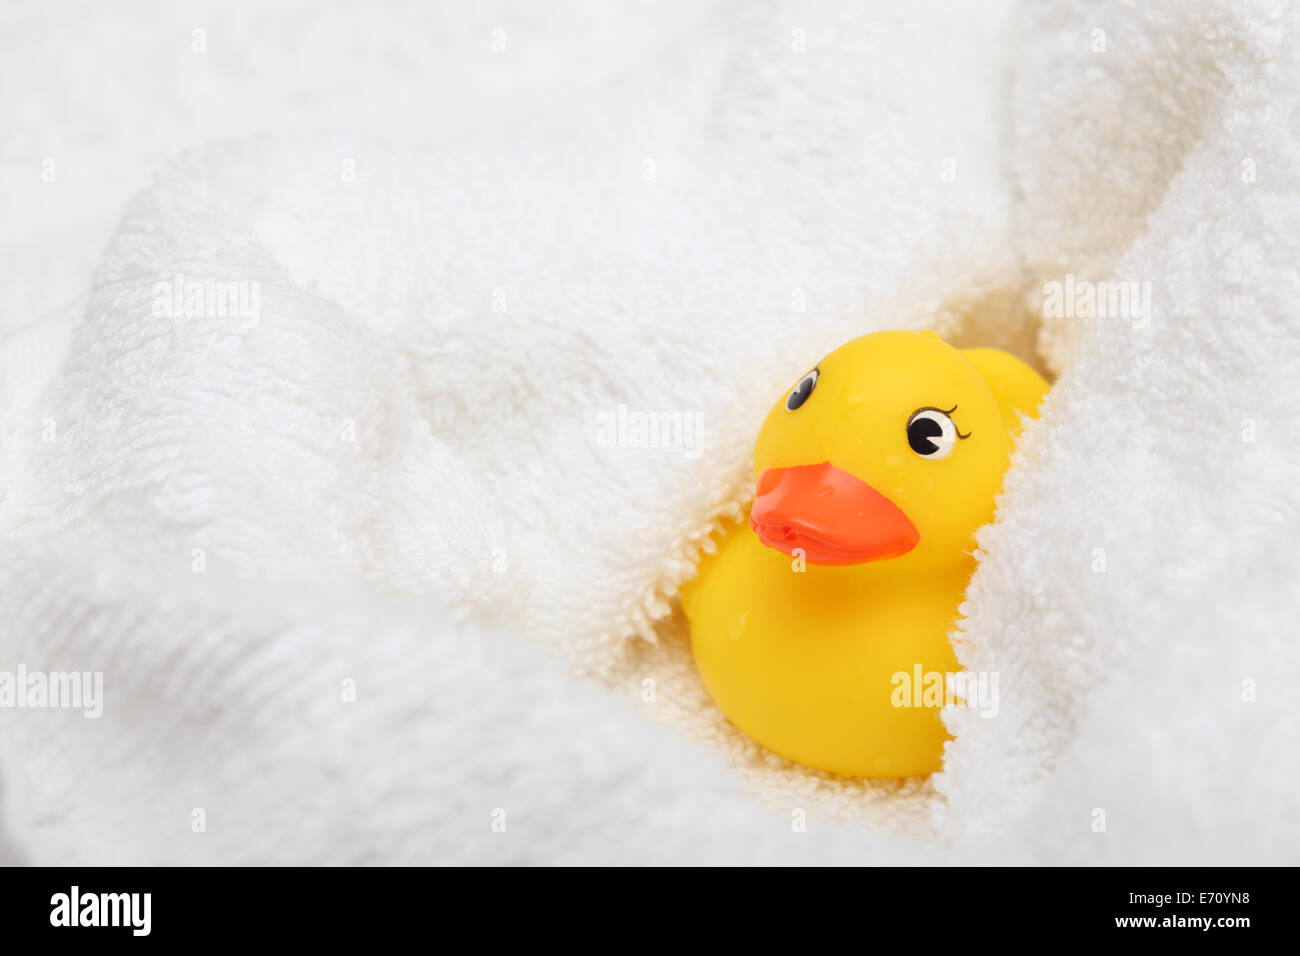 Canard en caoutchouc après bain enveloppé dans une serviette blanche et douce. Libre. Banque D'Images